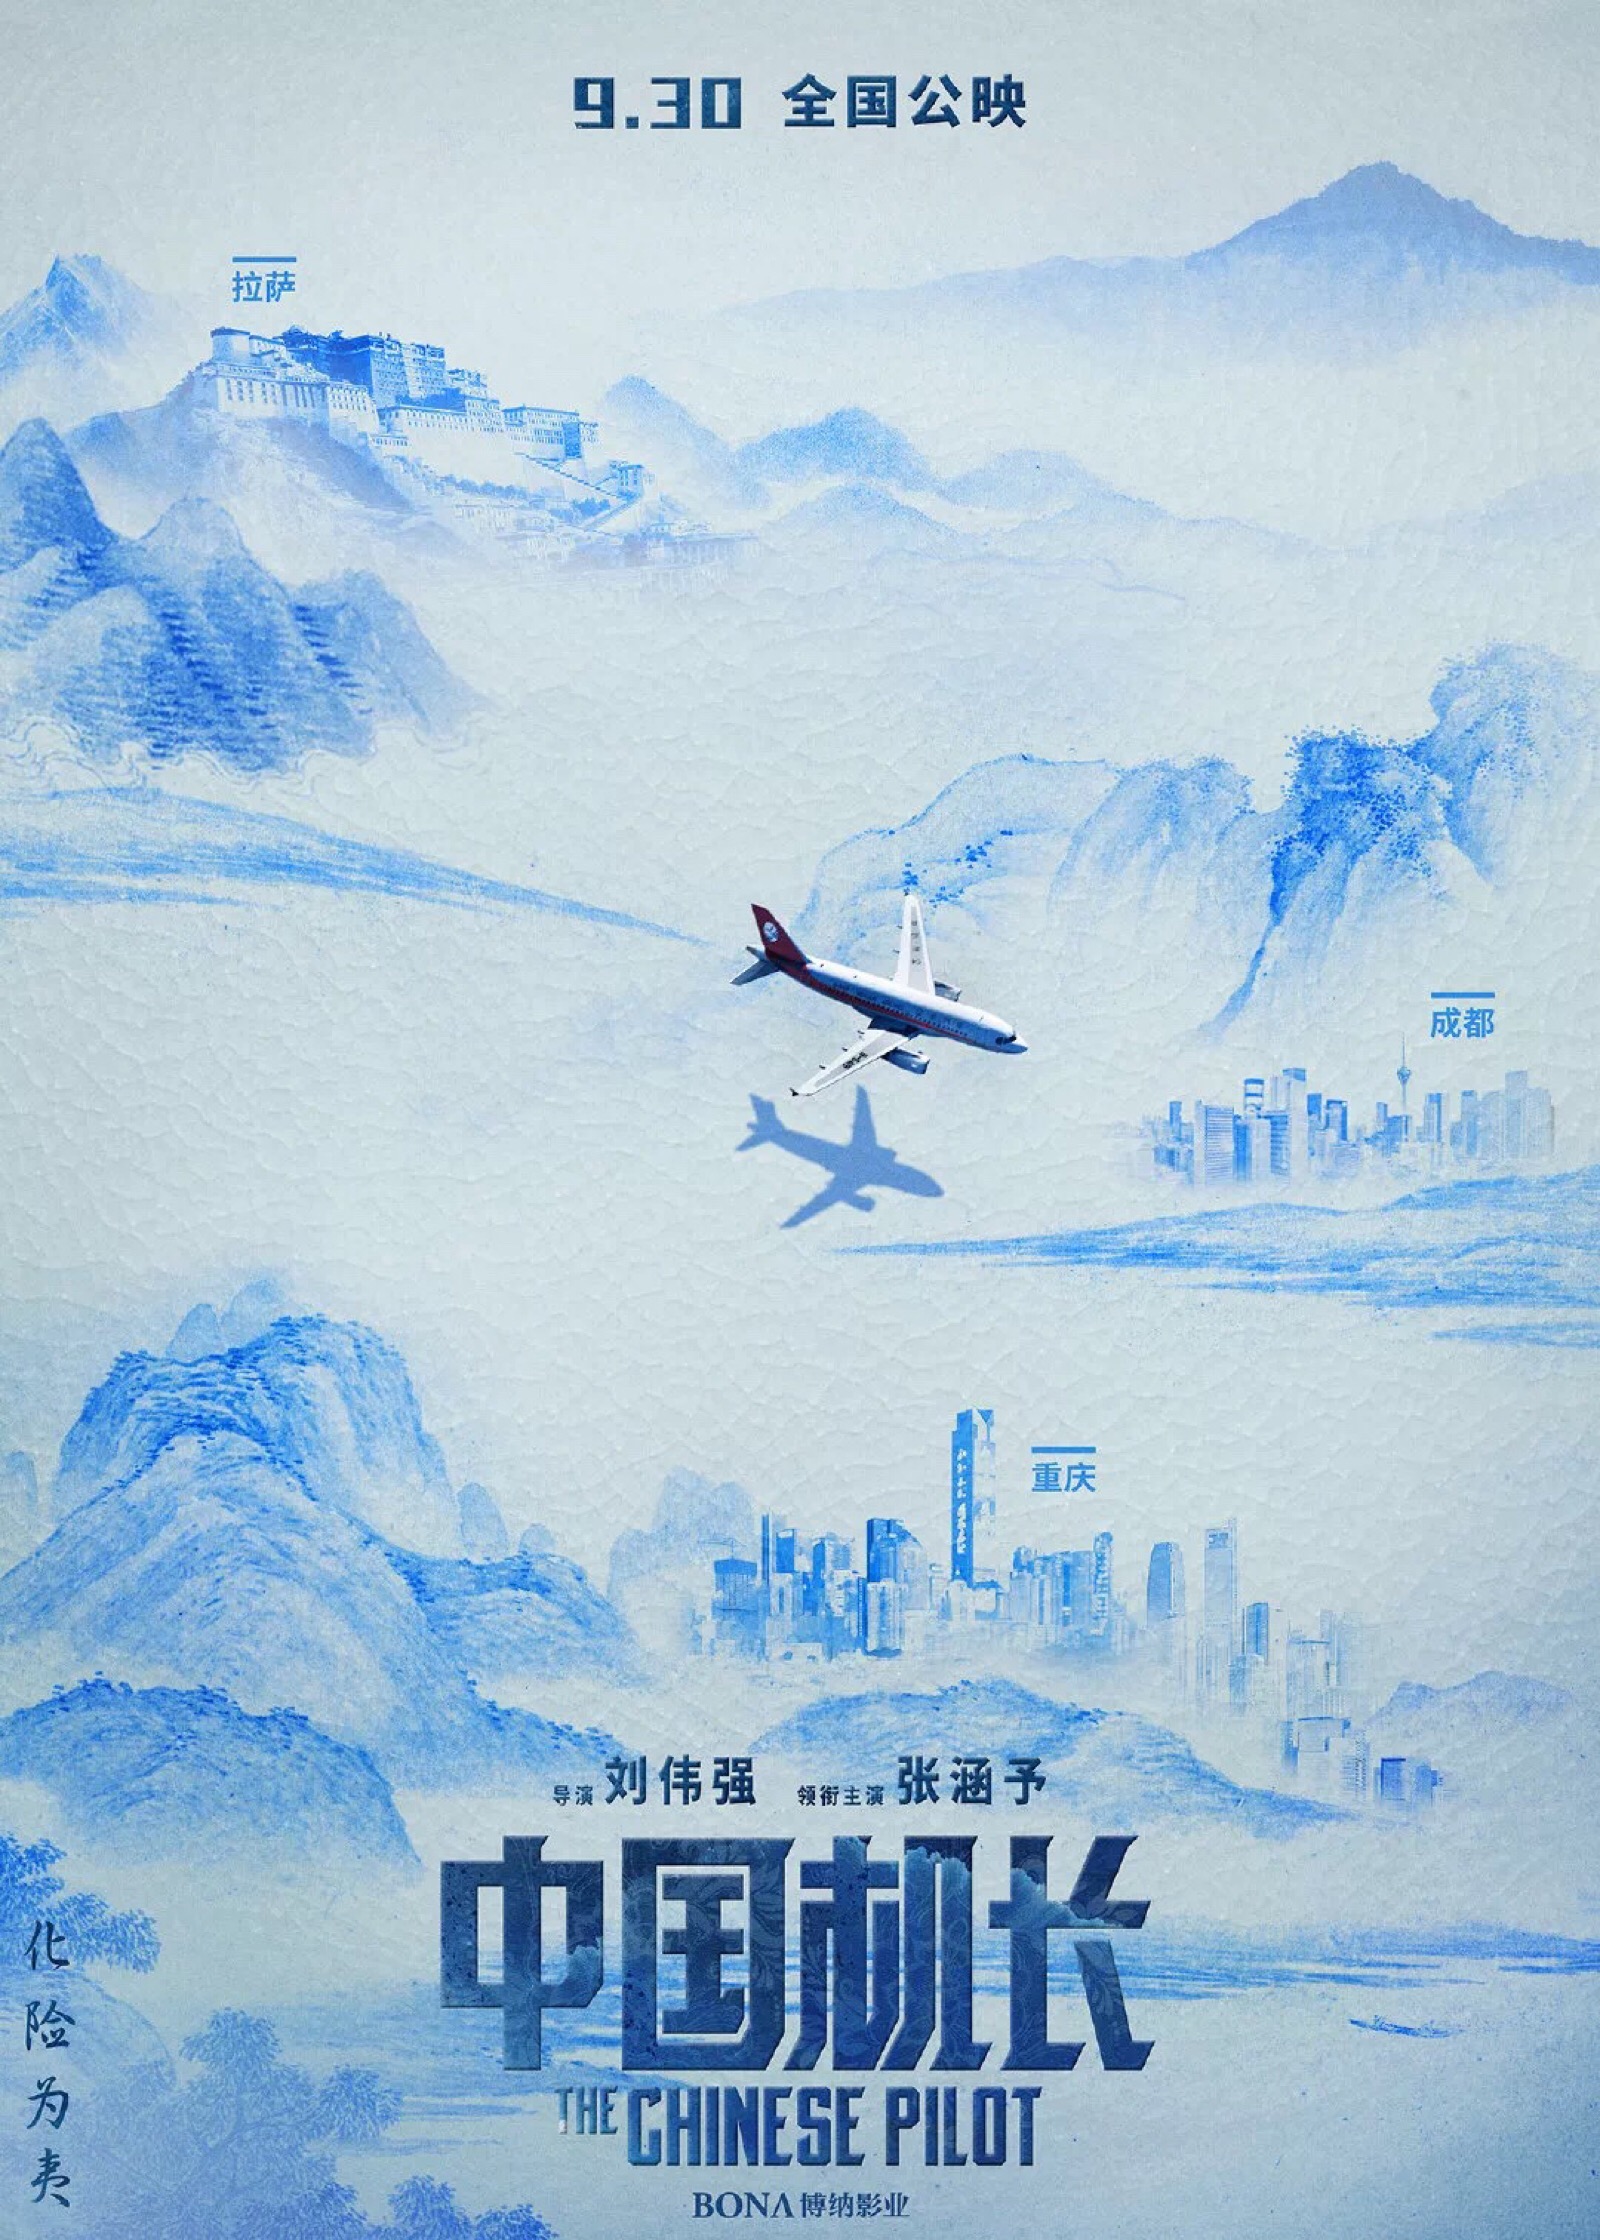 《中国机长》的电影海报设计